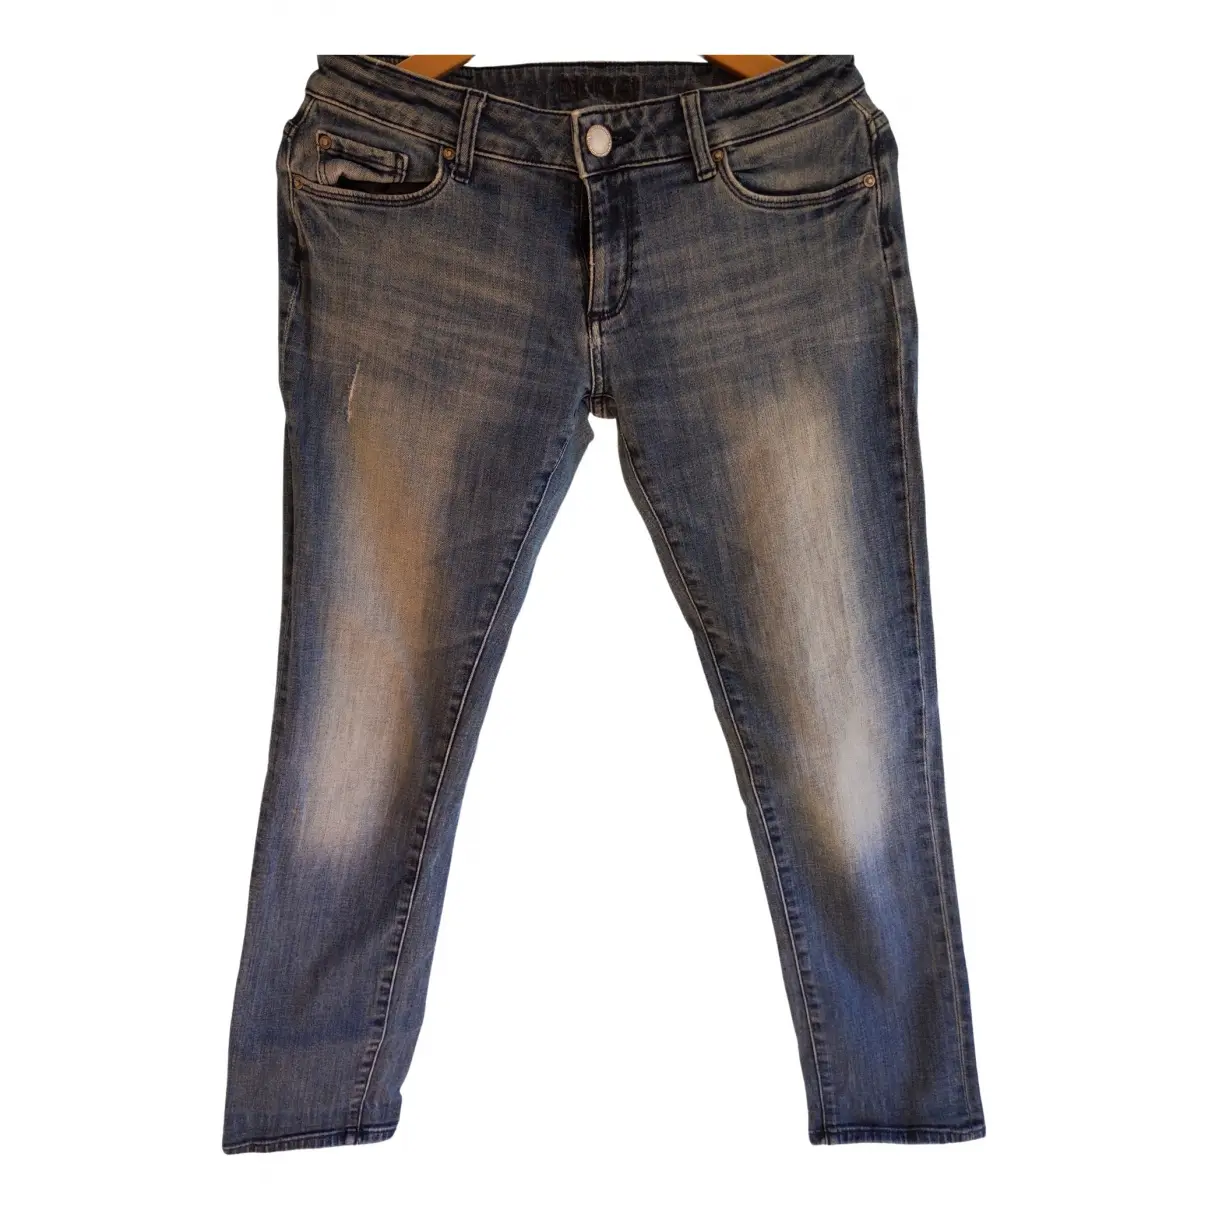 Blue Cotton - elasthane Jeans DL1961